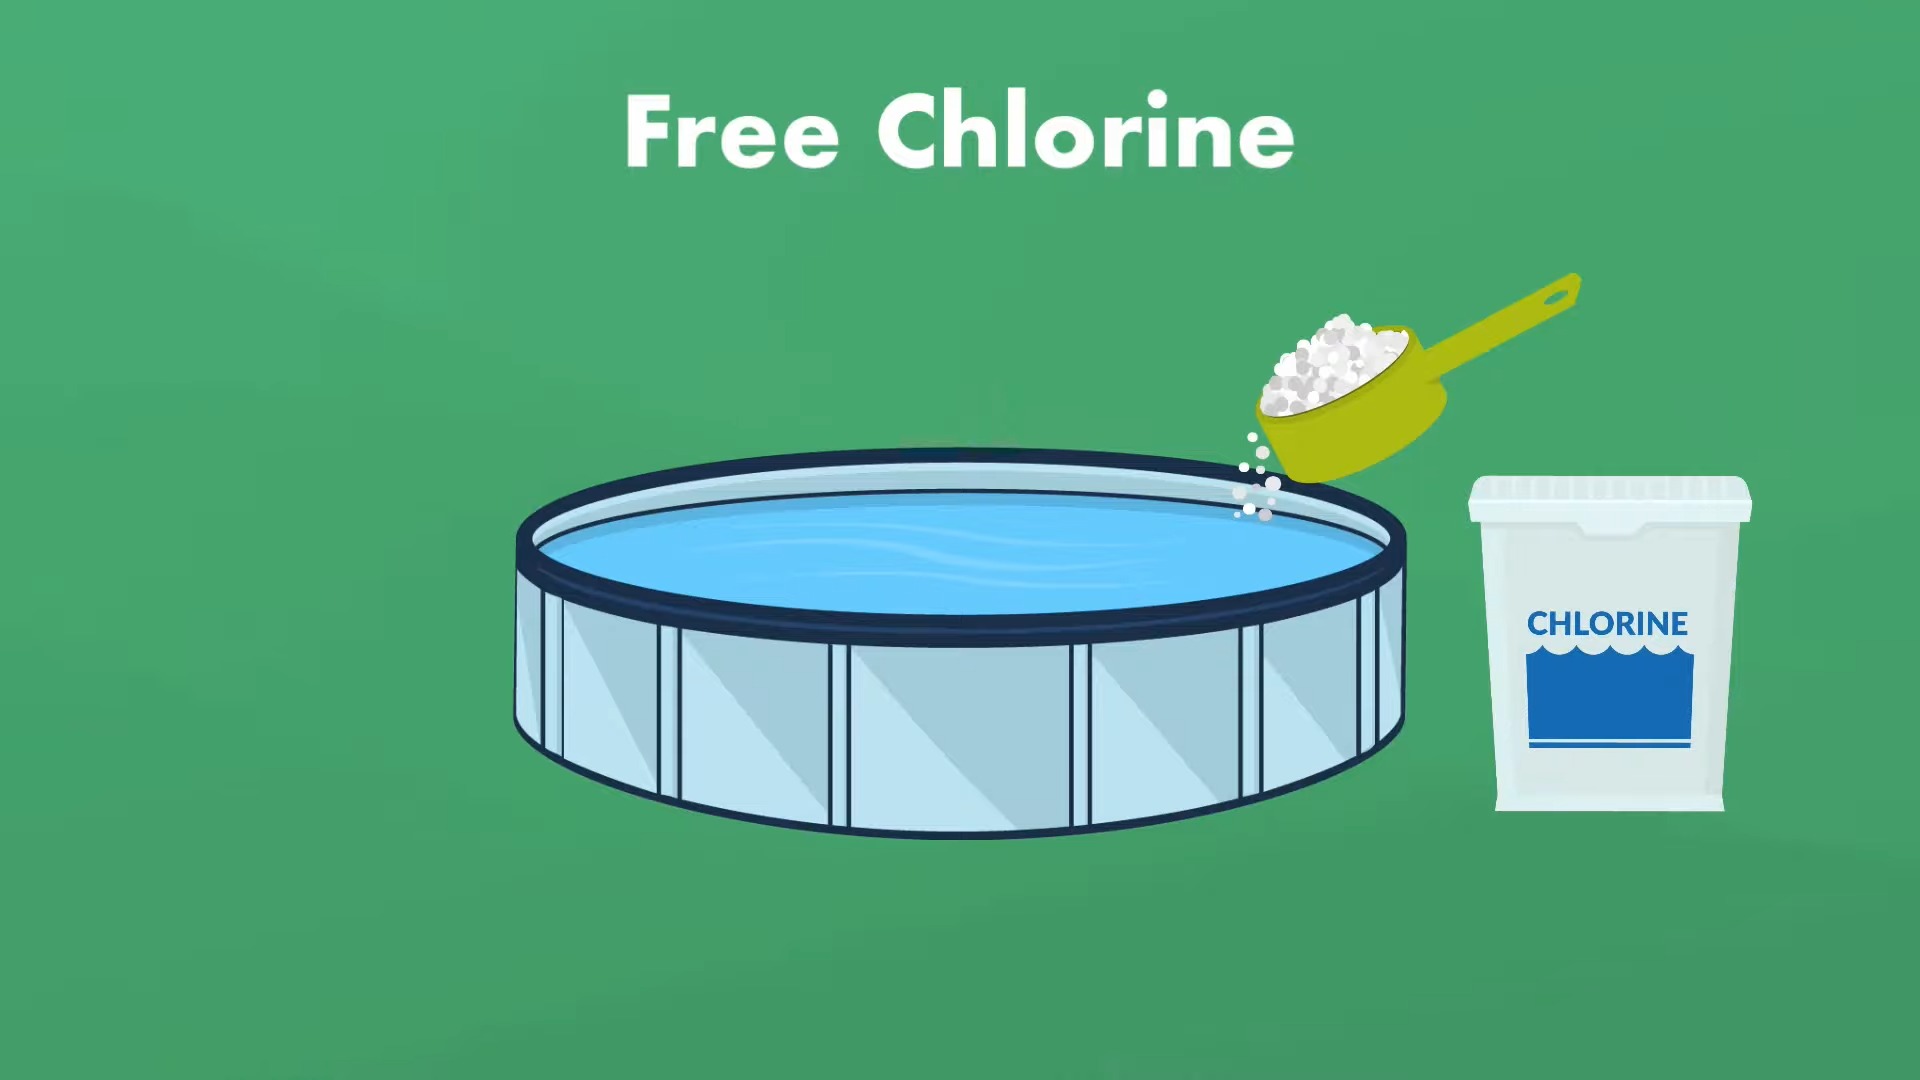 Free Chlorine - Sanitation